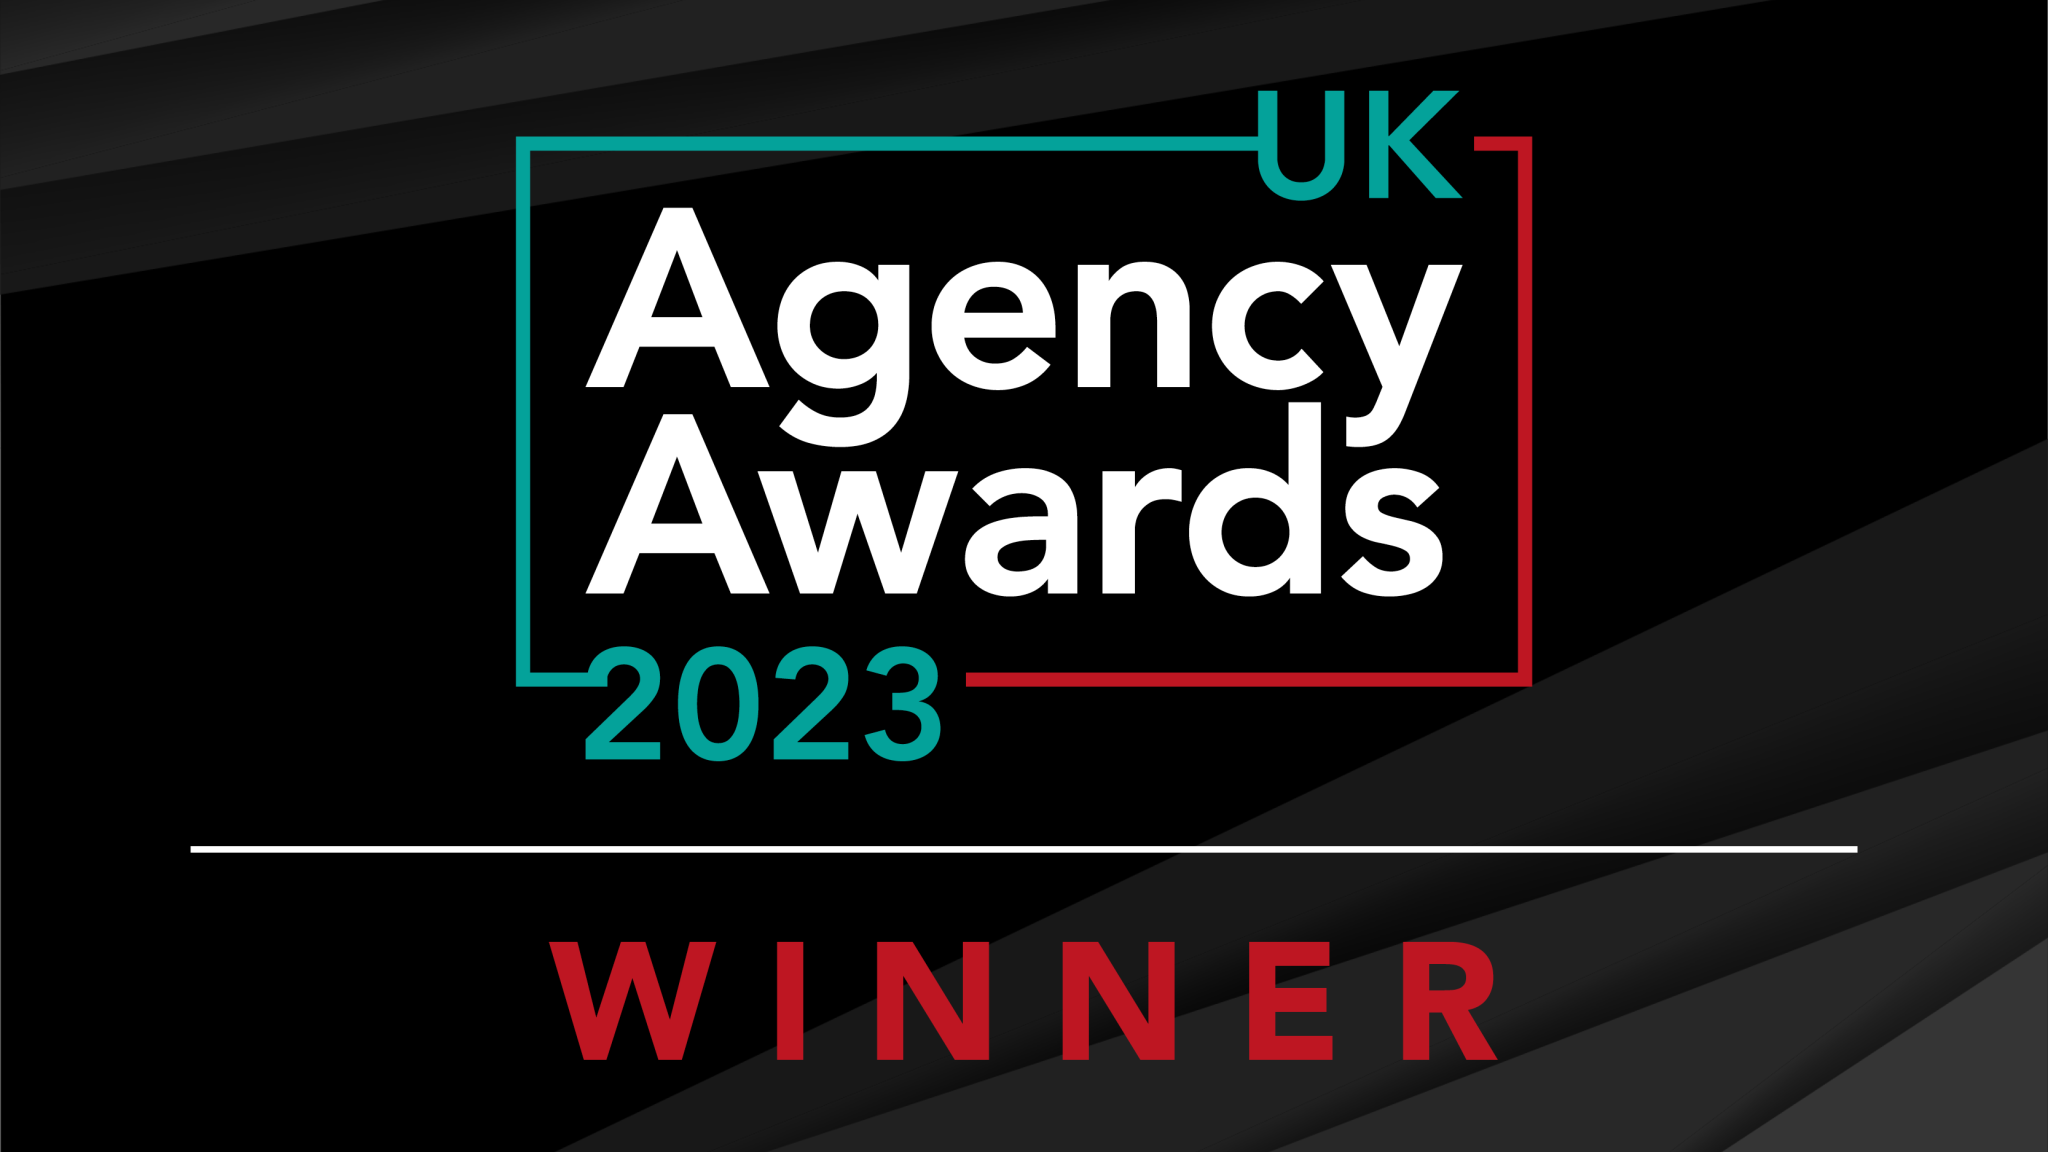 UK-Agency-Awards-2023-Winner-Social-Post-2048x1152-1